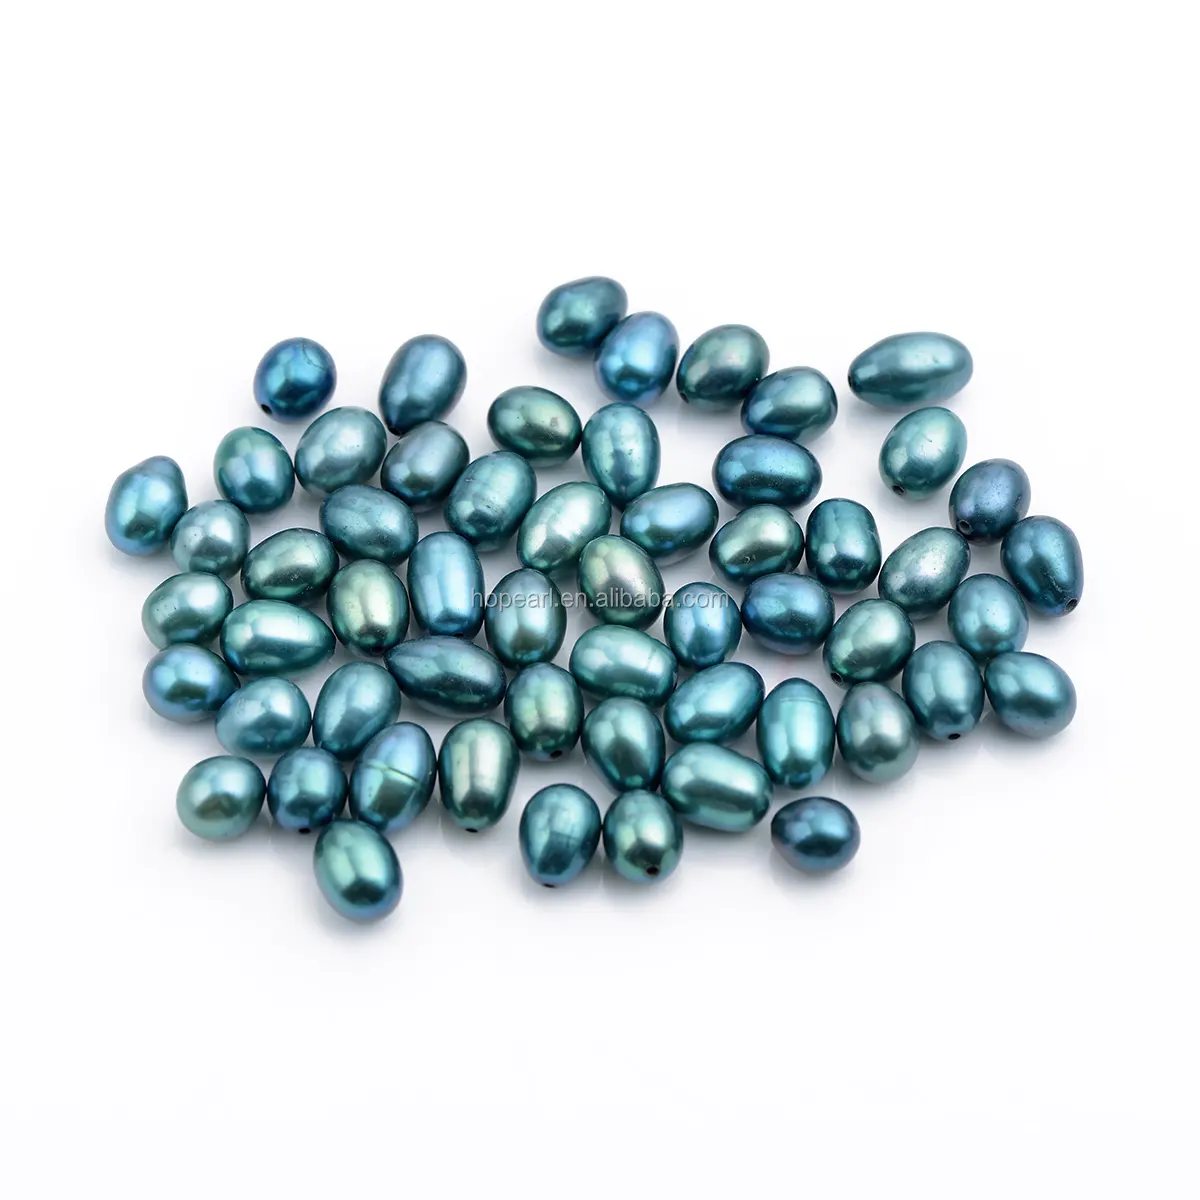 Perles d'eau douce, vente en gros, mélangées vert et bleu, forme de paon, larme à demi-perceuse, ample, LPB59, 6-9mm, vente en gros